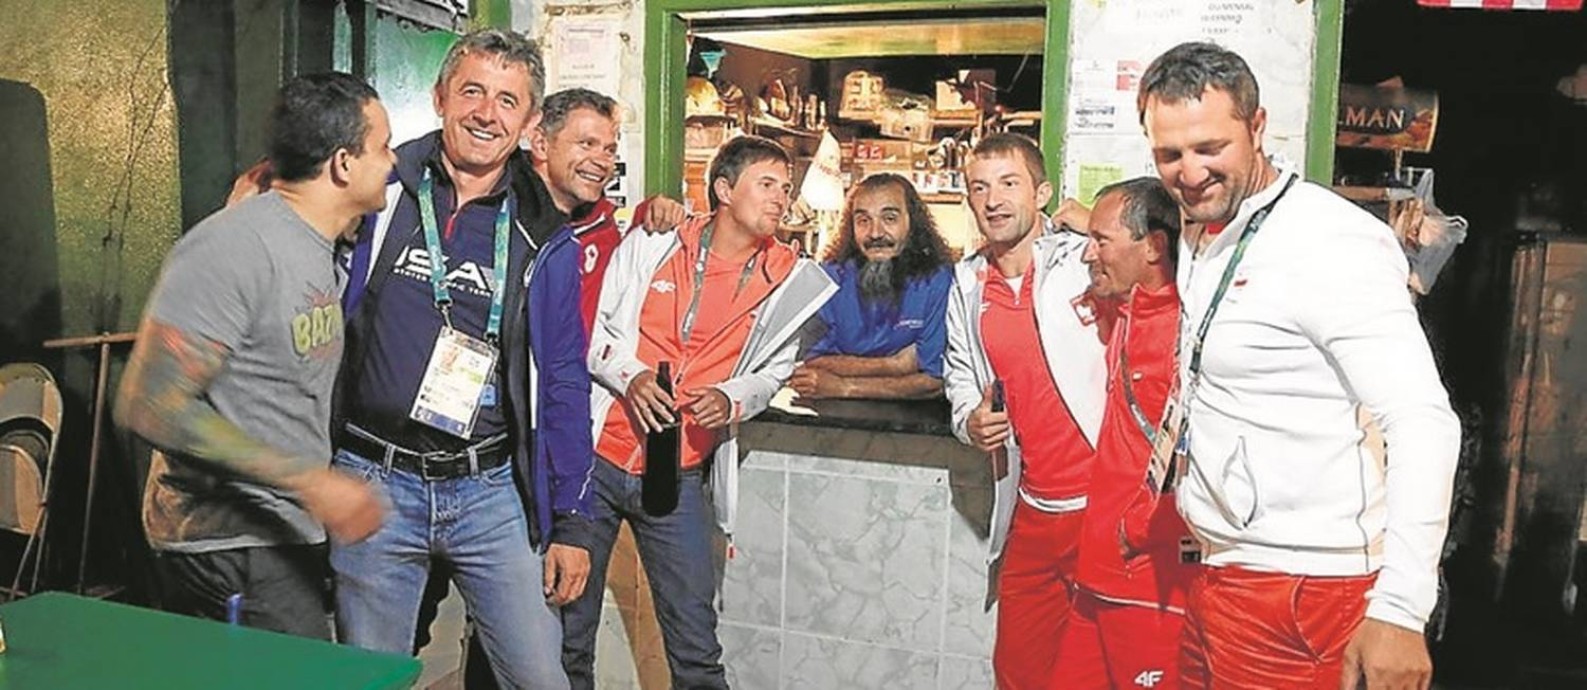 José Felipe de Araújo, o Bin Laden, junto a integrantes de delegações estrangeiras em seu bar Foto: Fabio Rossi / O Globo